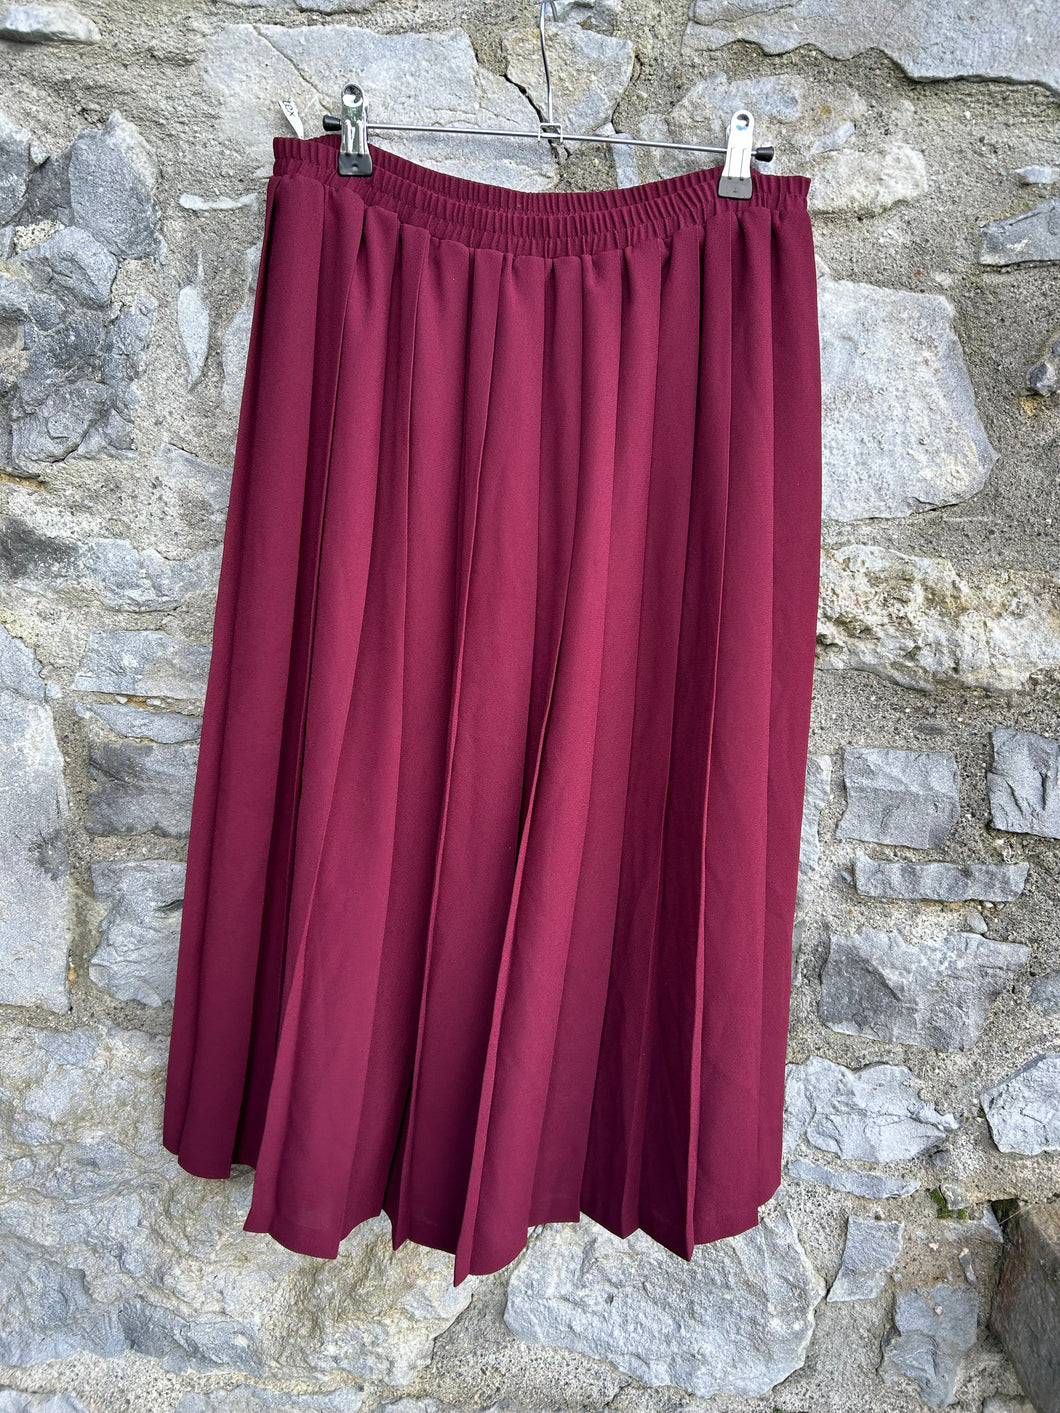 90s maroon pleated skirt uk 14-16